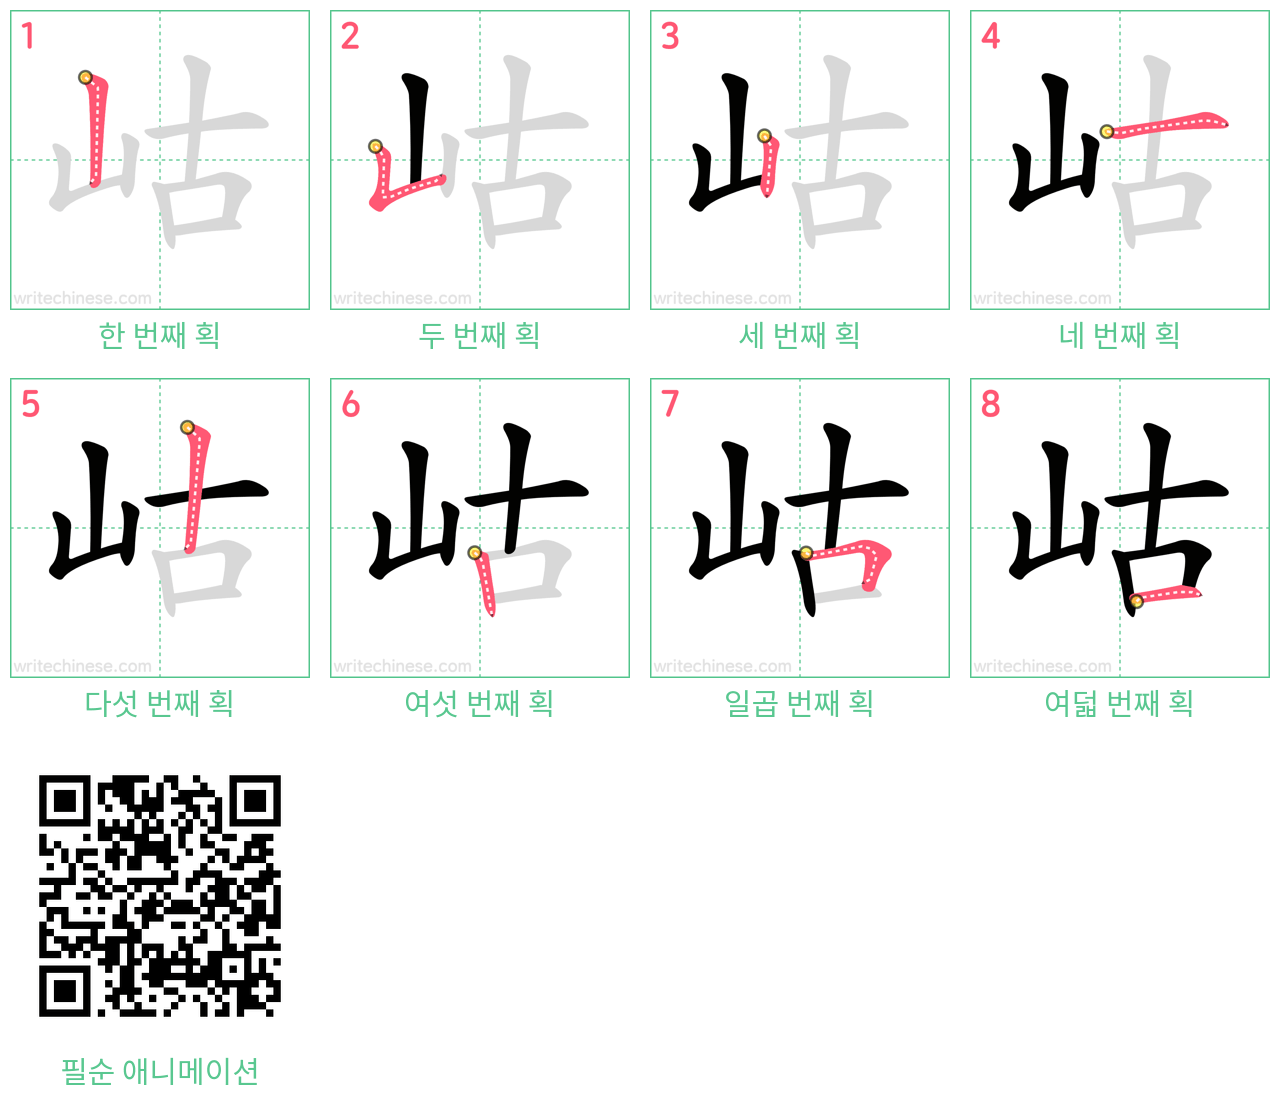 岵 step-by-step stroke order diagrams